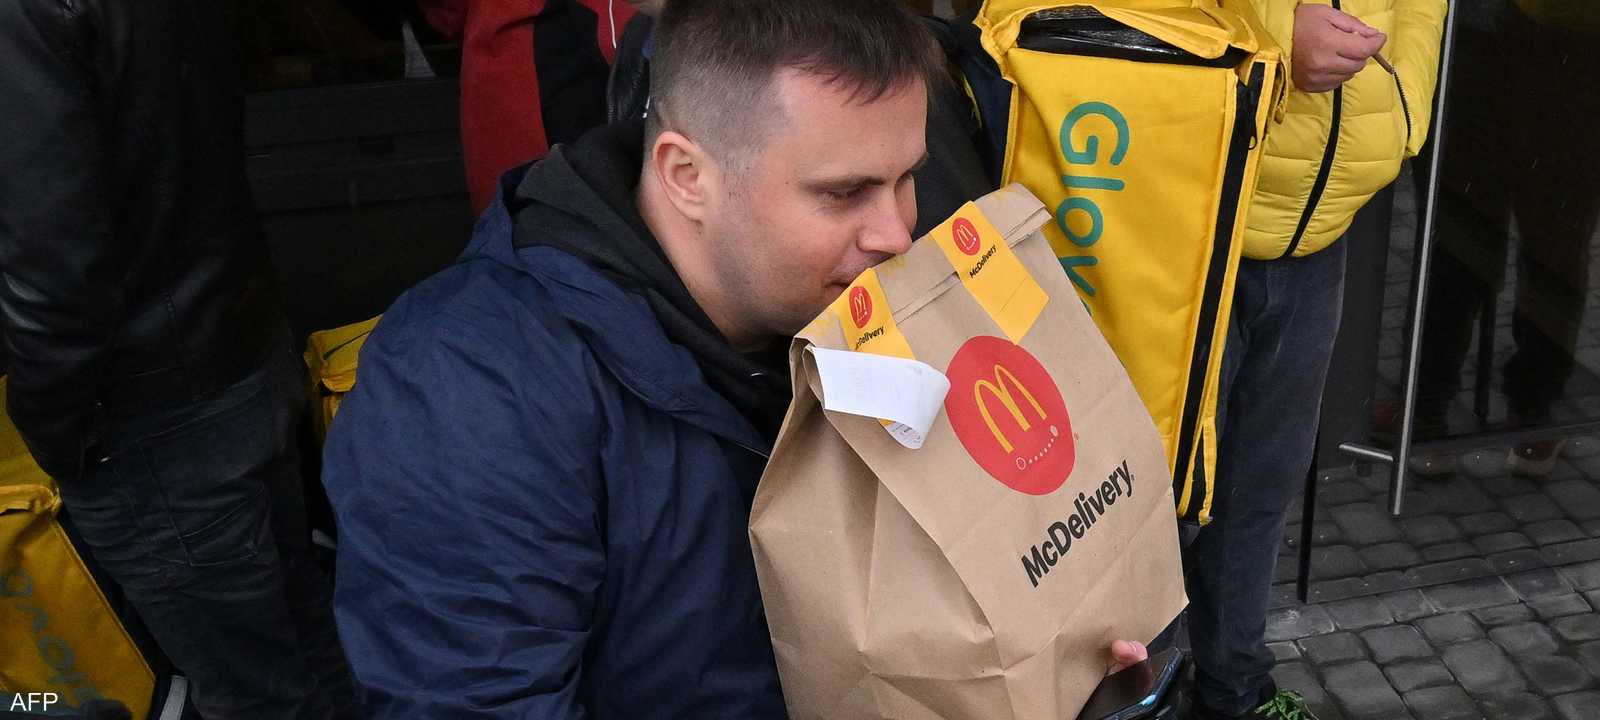 إعادة افتتاح مطعم ماكدونالدز في كييف